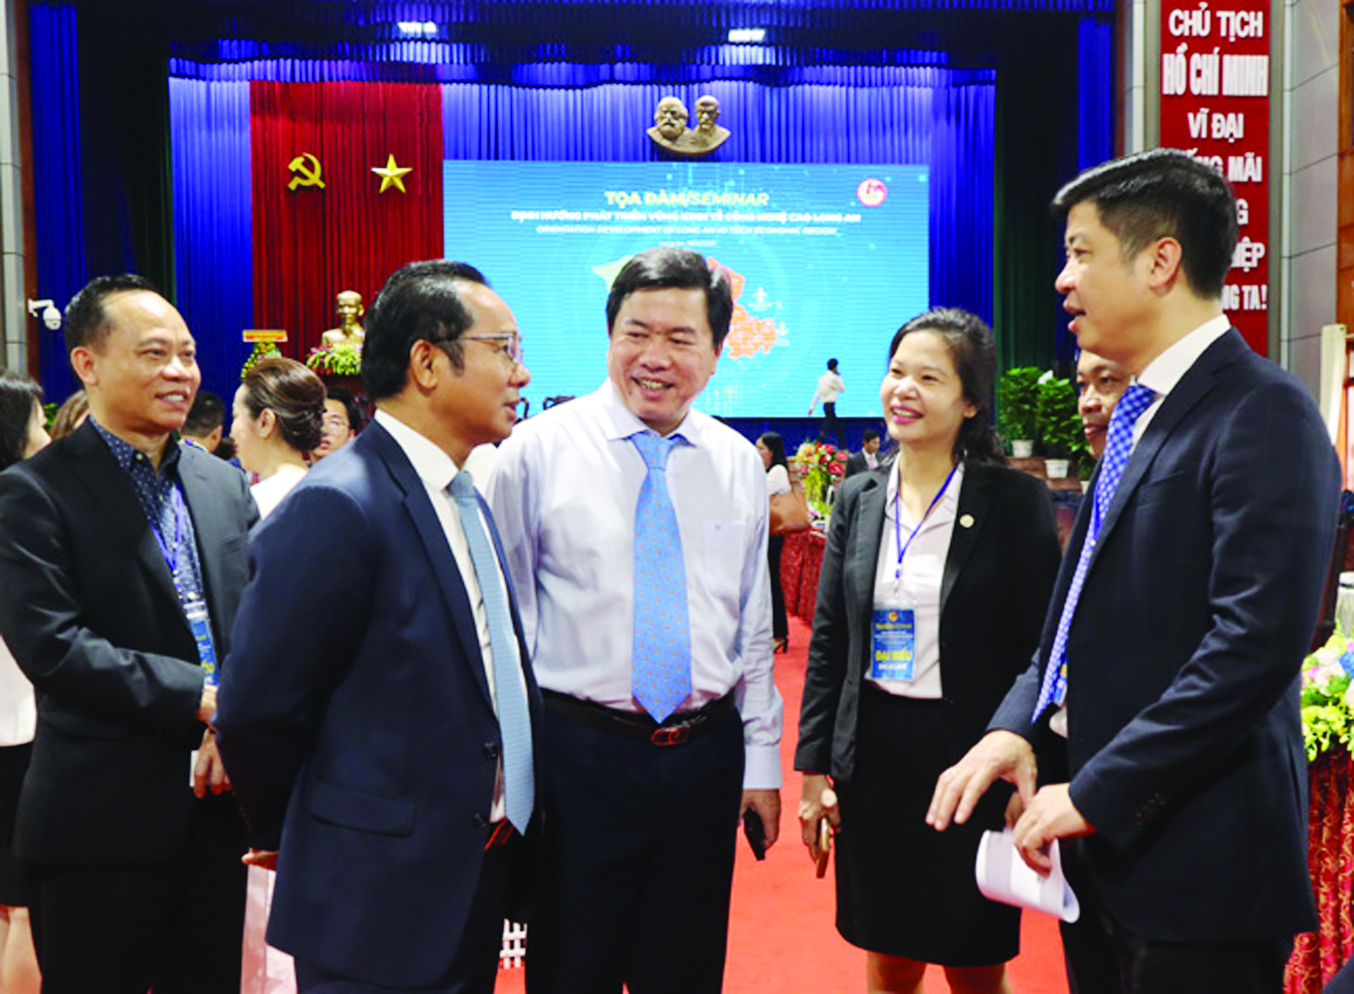  Các đại biểu trao đổi thông tin tại tọa đàm Định hướng phát triển vùng kinh tế công nghệ cao Long An.